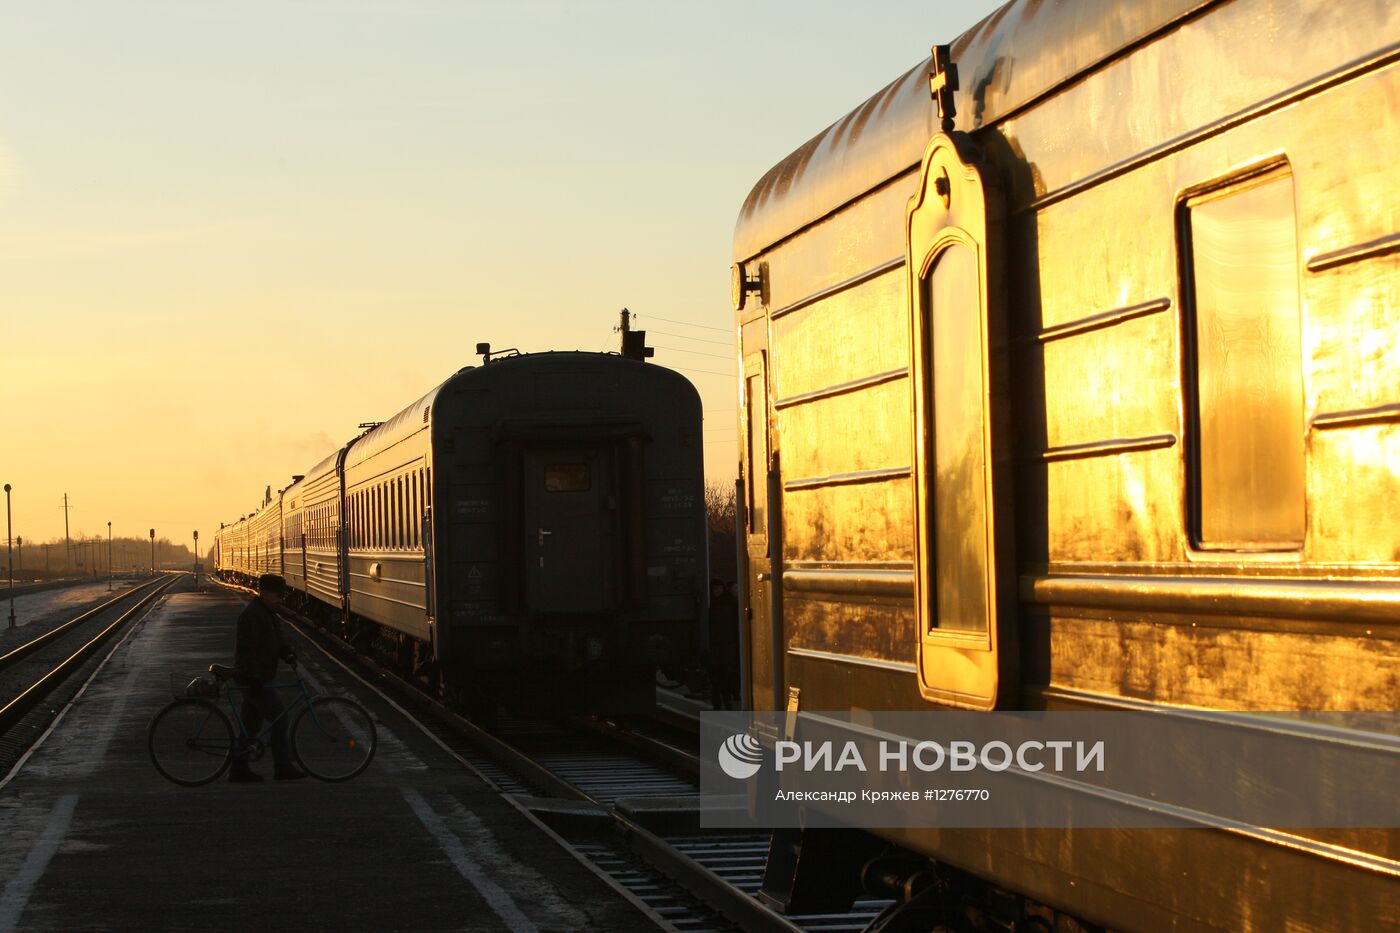 Рейс поезда "За духовное возрождение России"